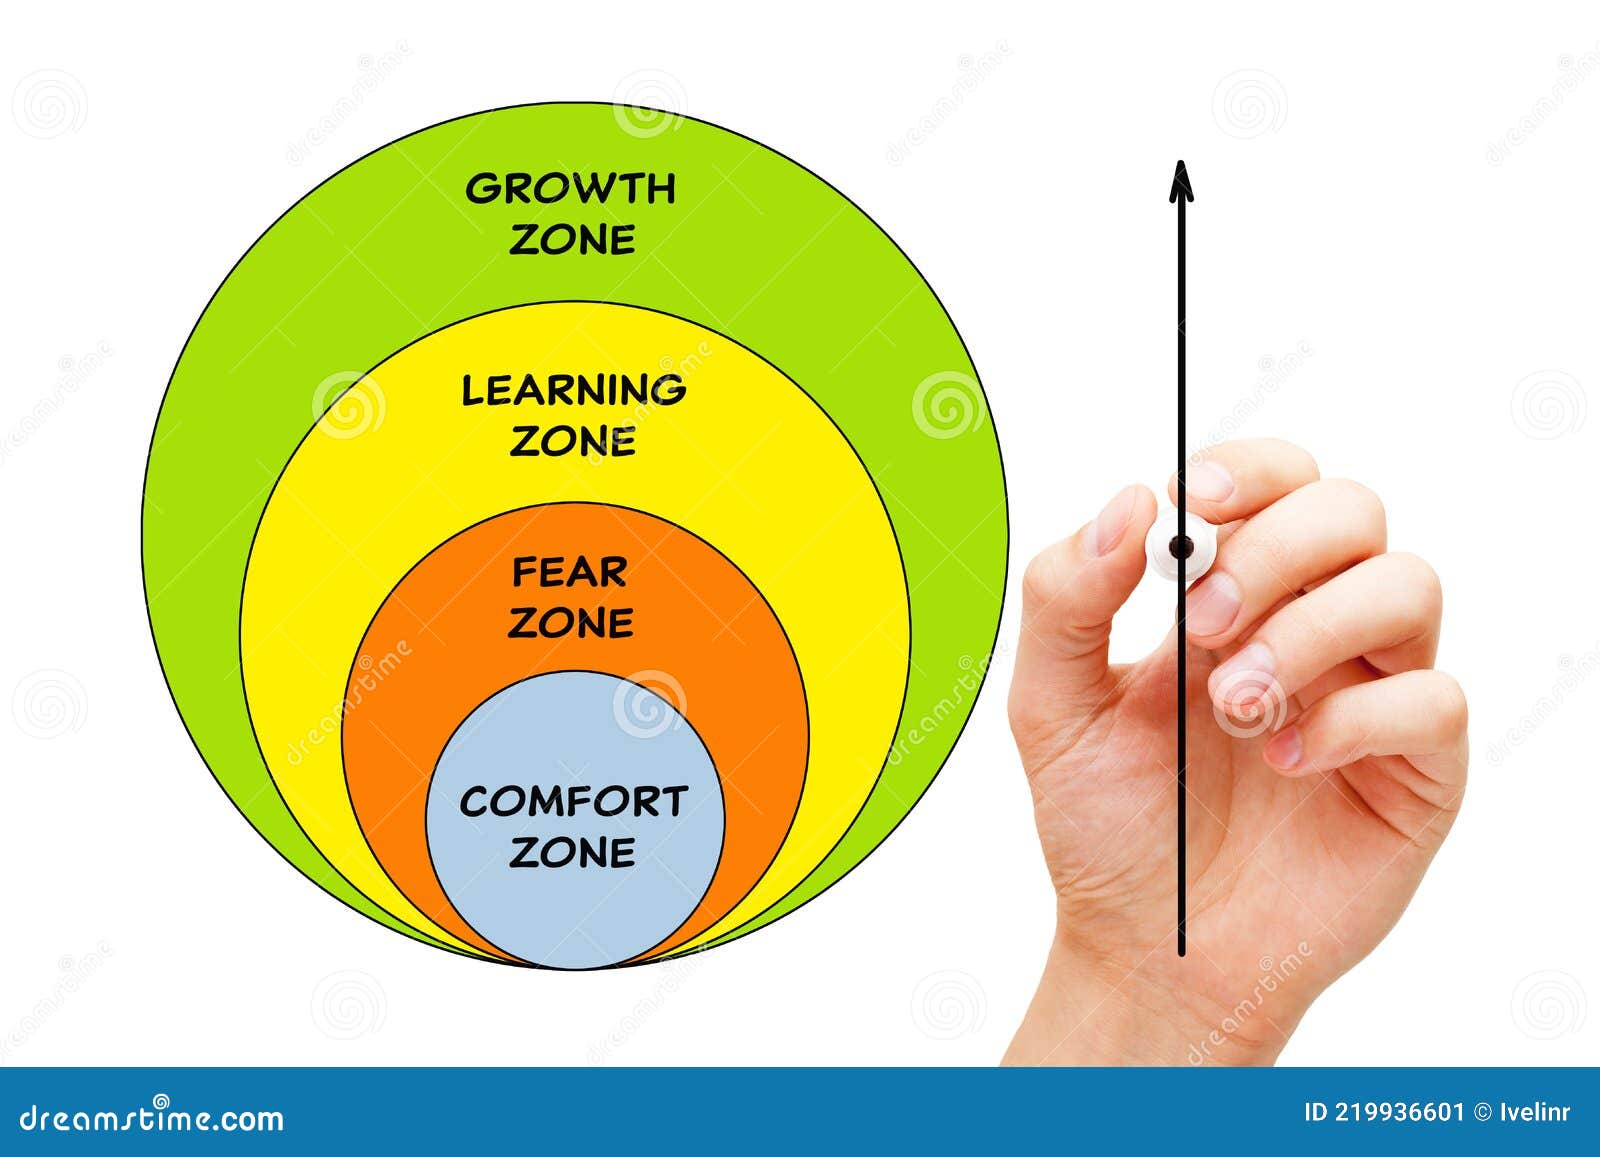 comfort zone diagram success concept